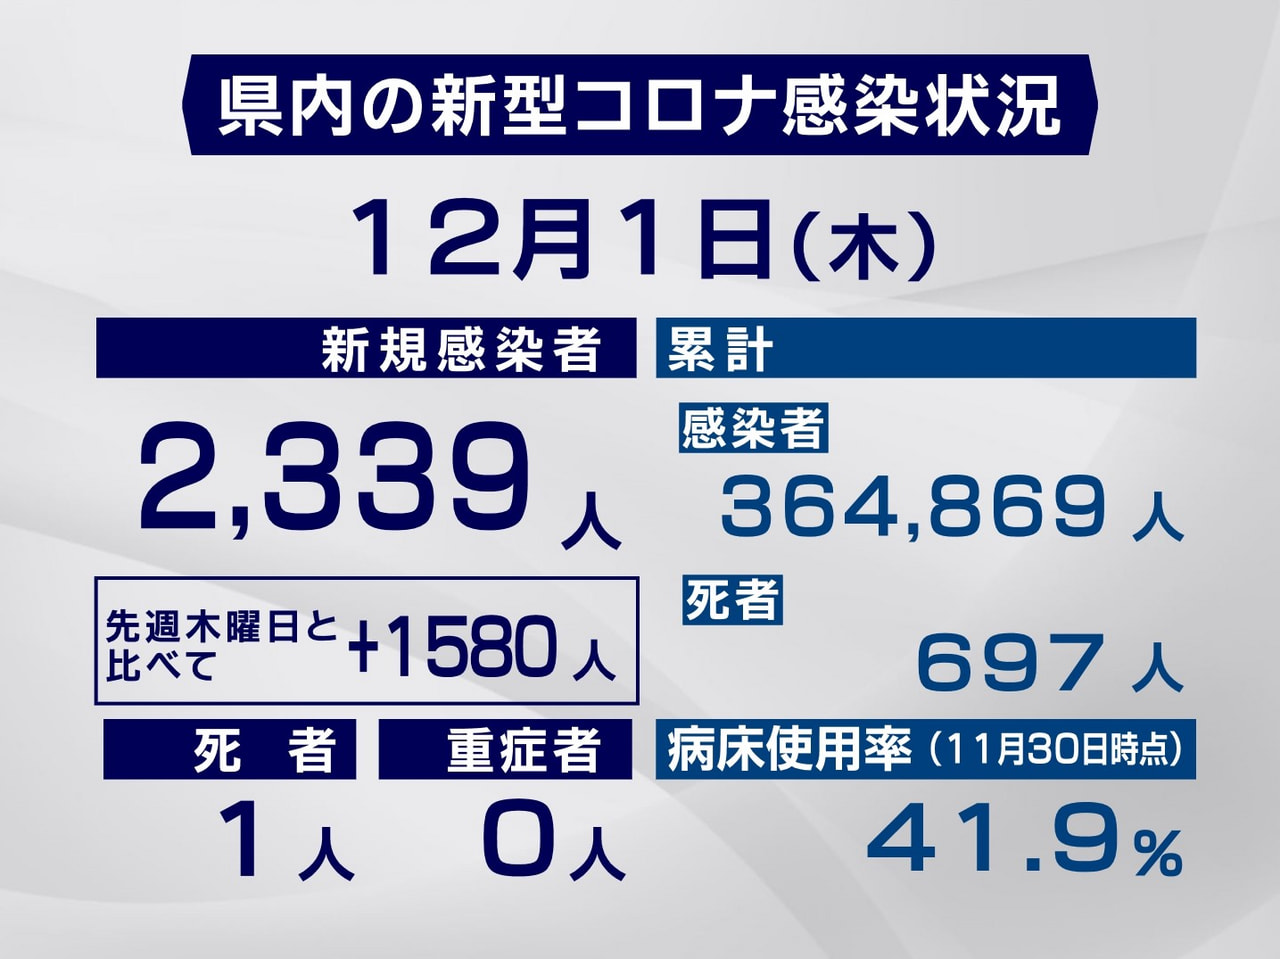 岐阜県と岐阜市は１日、新型コロナウイルスの感染者が新たに２３３９人、また、１人の...